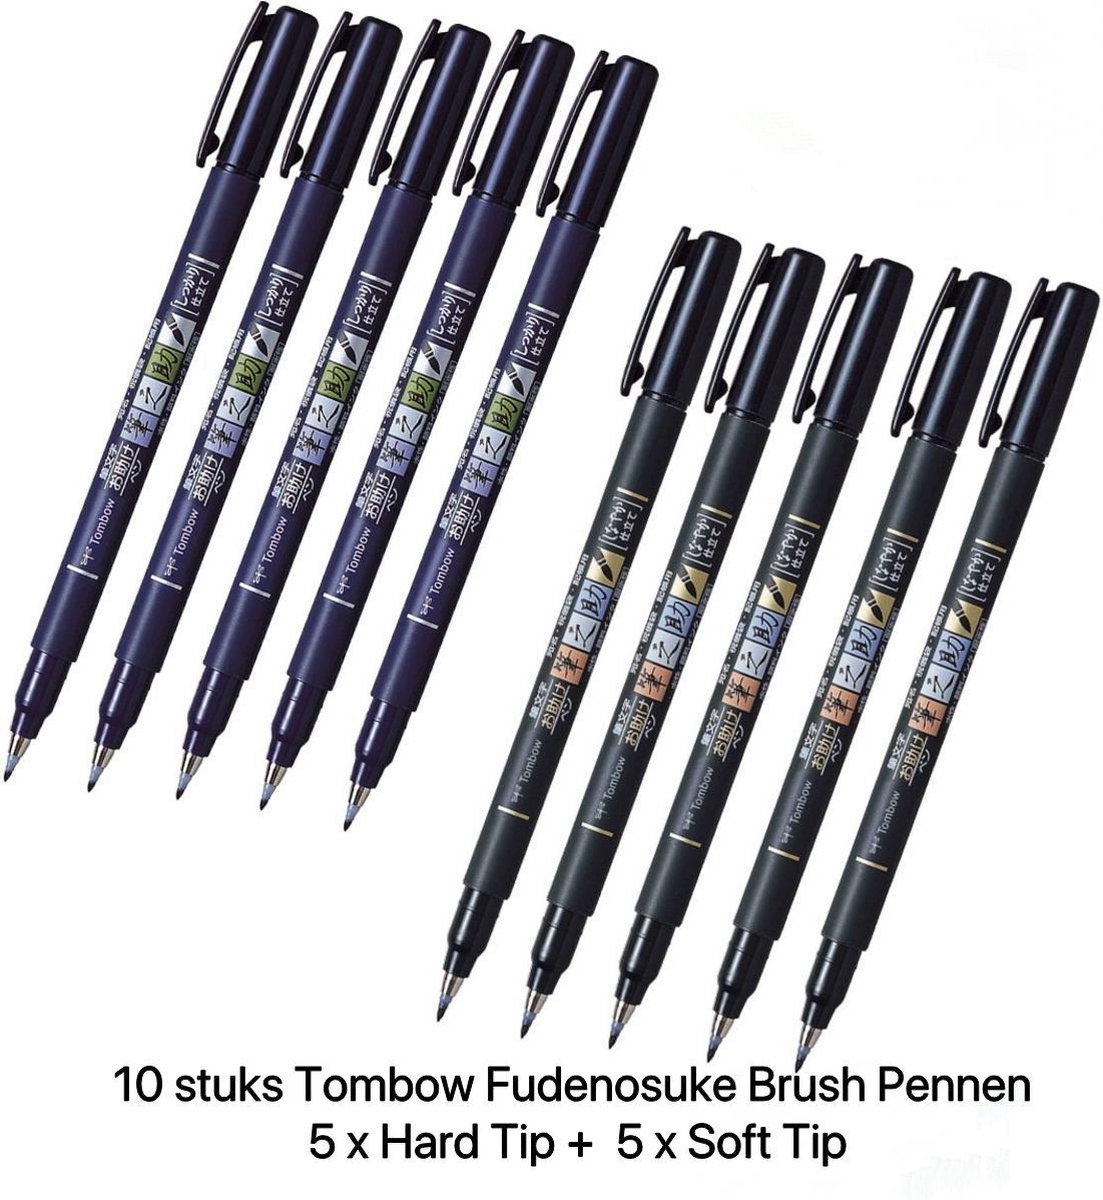 10 stuks Tombow  Fudenosuke Brushpennen verpakt in een Zipperbag